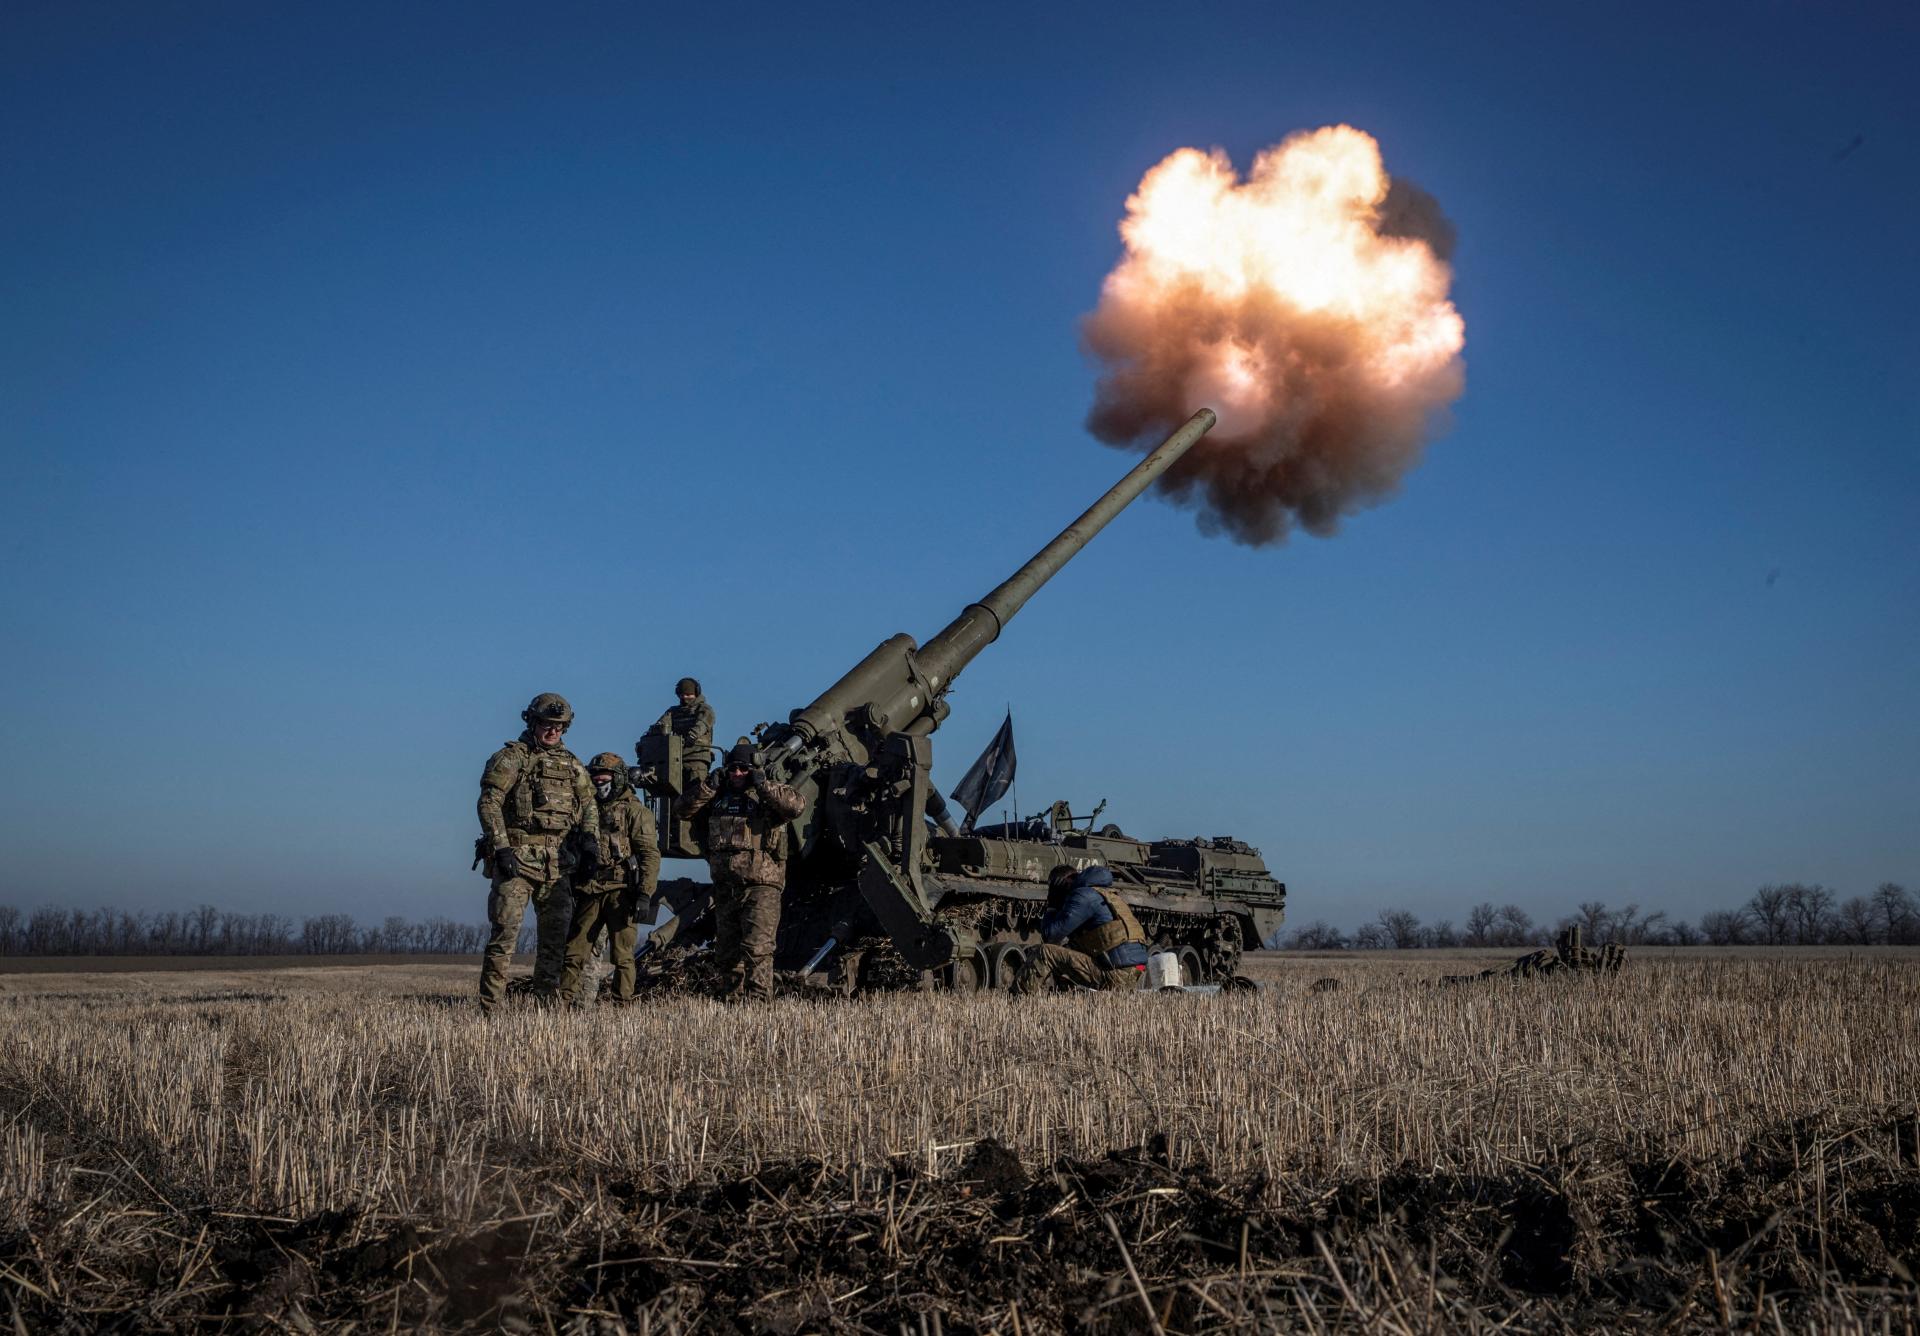 Vojna sa rozhodne na Kryme, tvrdí uznávaný generál. Ukrajinu brzdí pomalý Západ